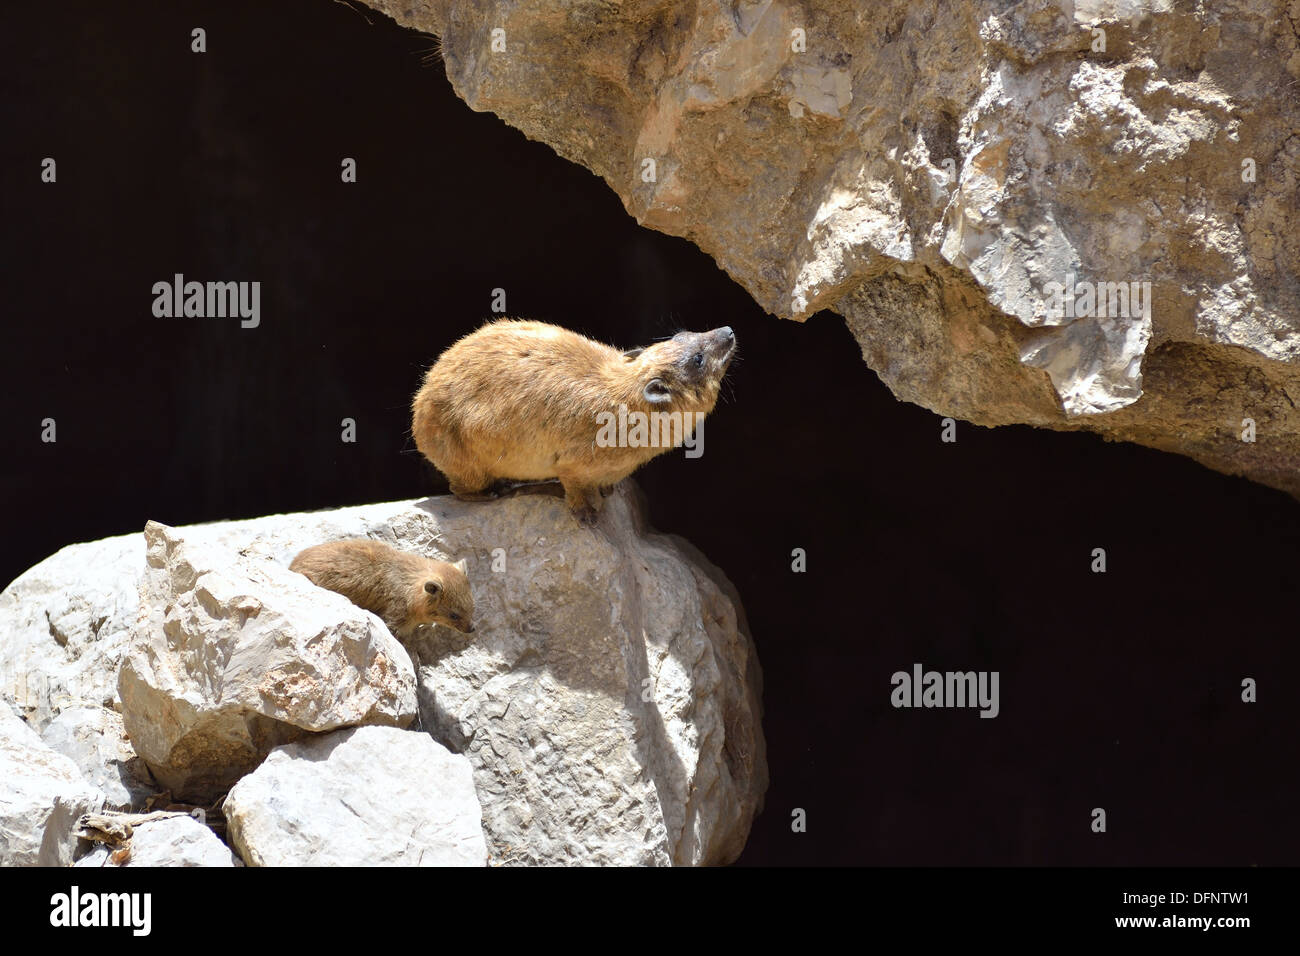 République rock hyrax (Procavia capensis) moyennes, de mammifères terrestres qui se trouve partout en Afrique et au Moyen-Orient. Banque D'Images